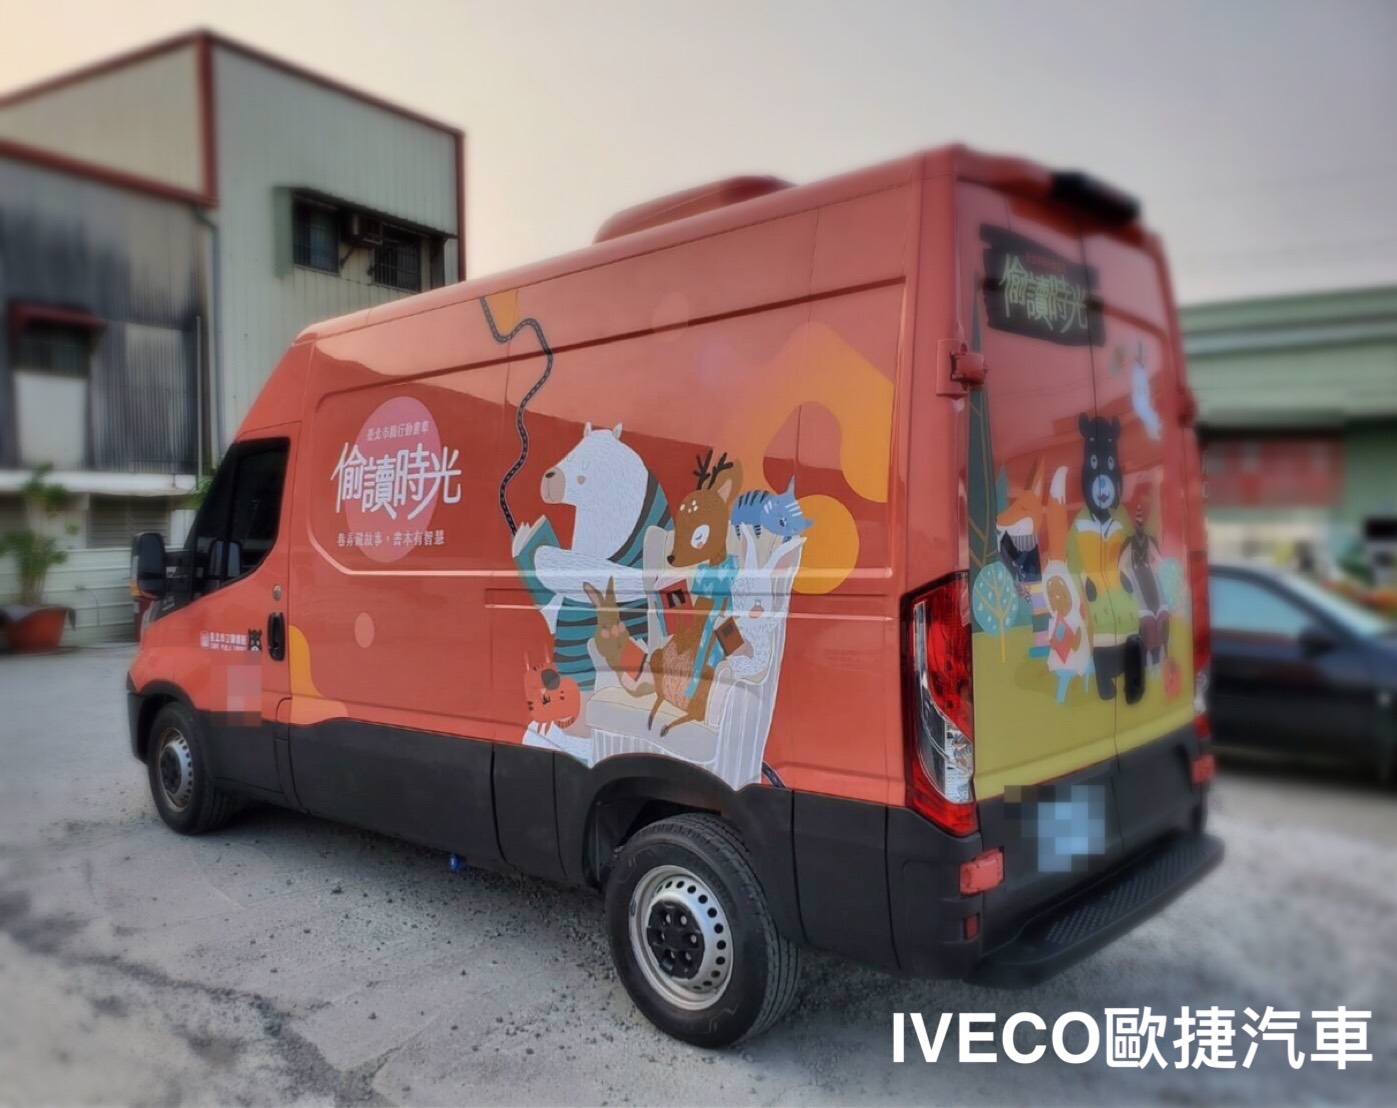 IVECO移動式全新世代書車